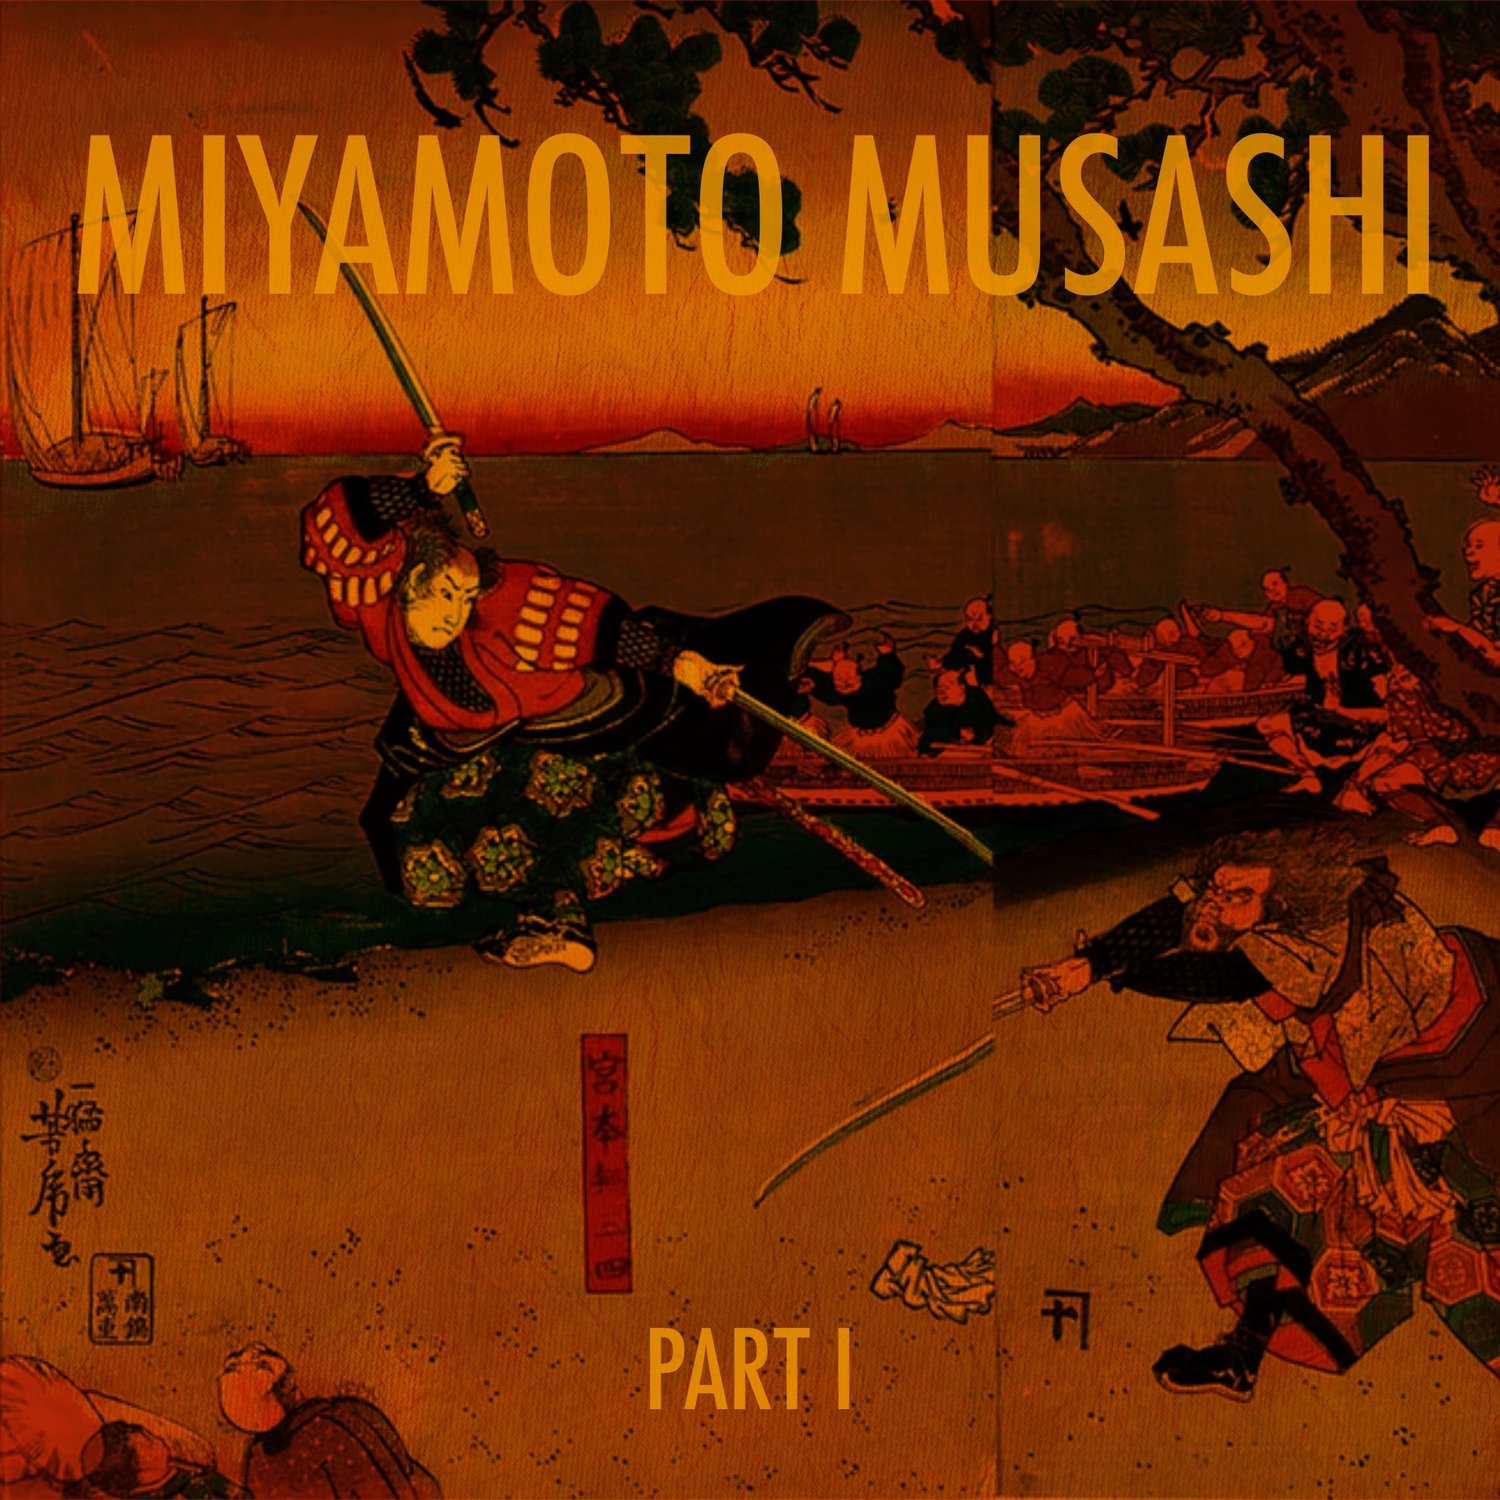 EPISODE 102: The Lone Samurai, Miyamoto Musashi (Part 1)